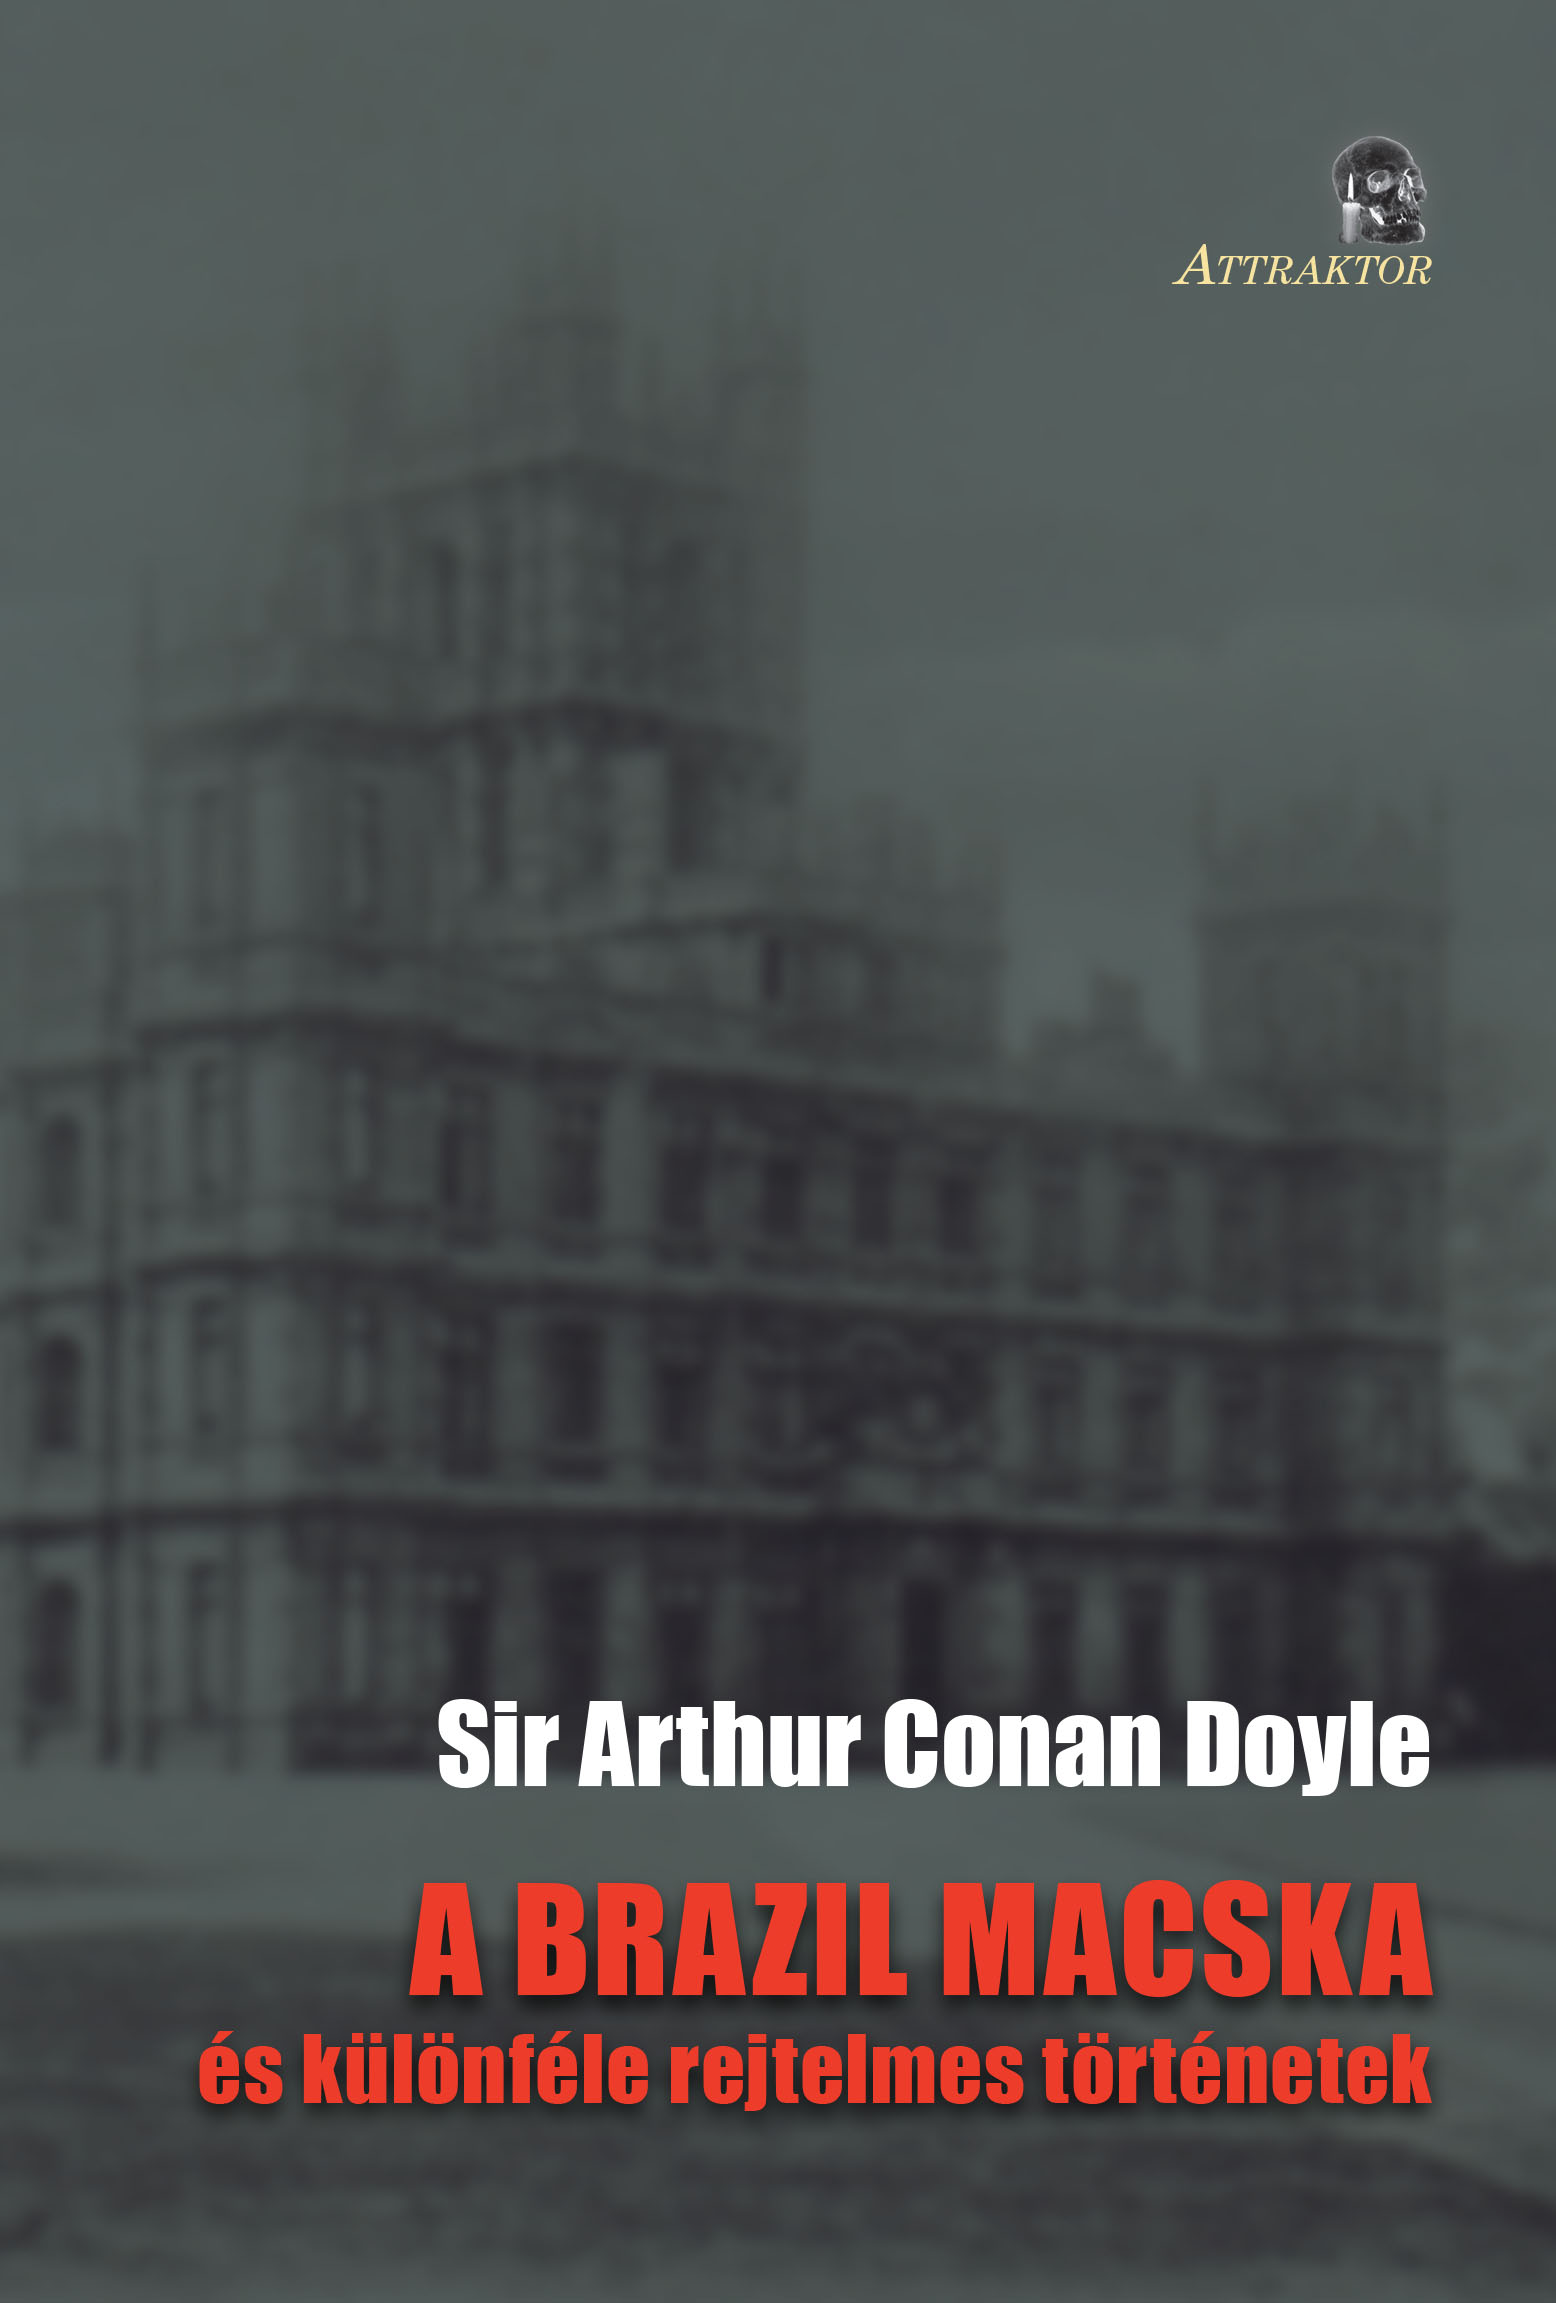 Arthur Conan Doyle - A BRAZIL MACSKA